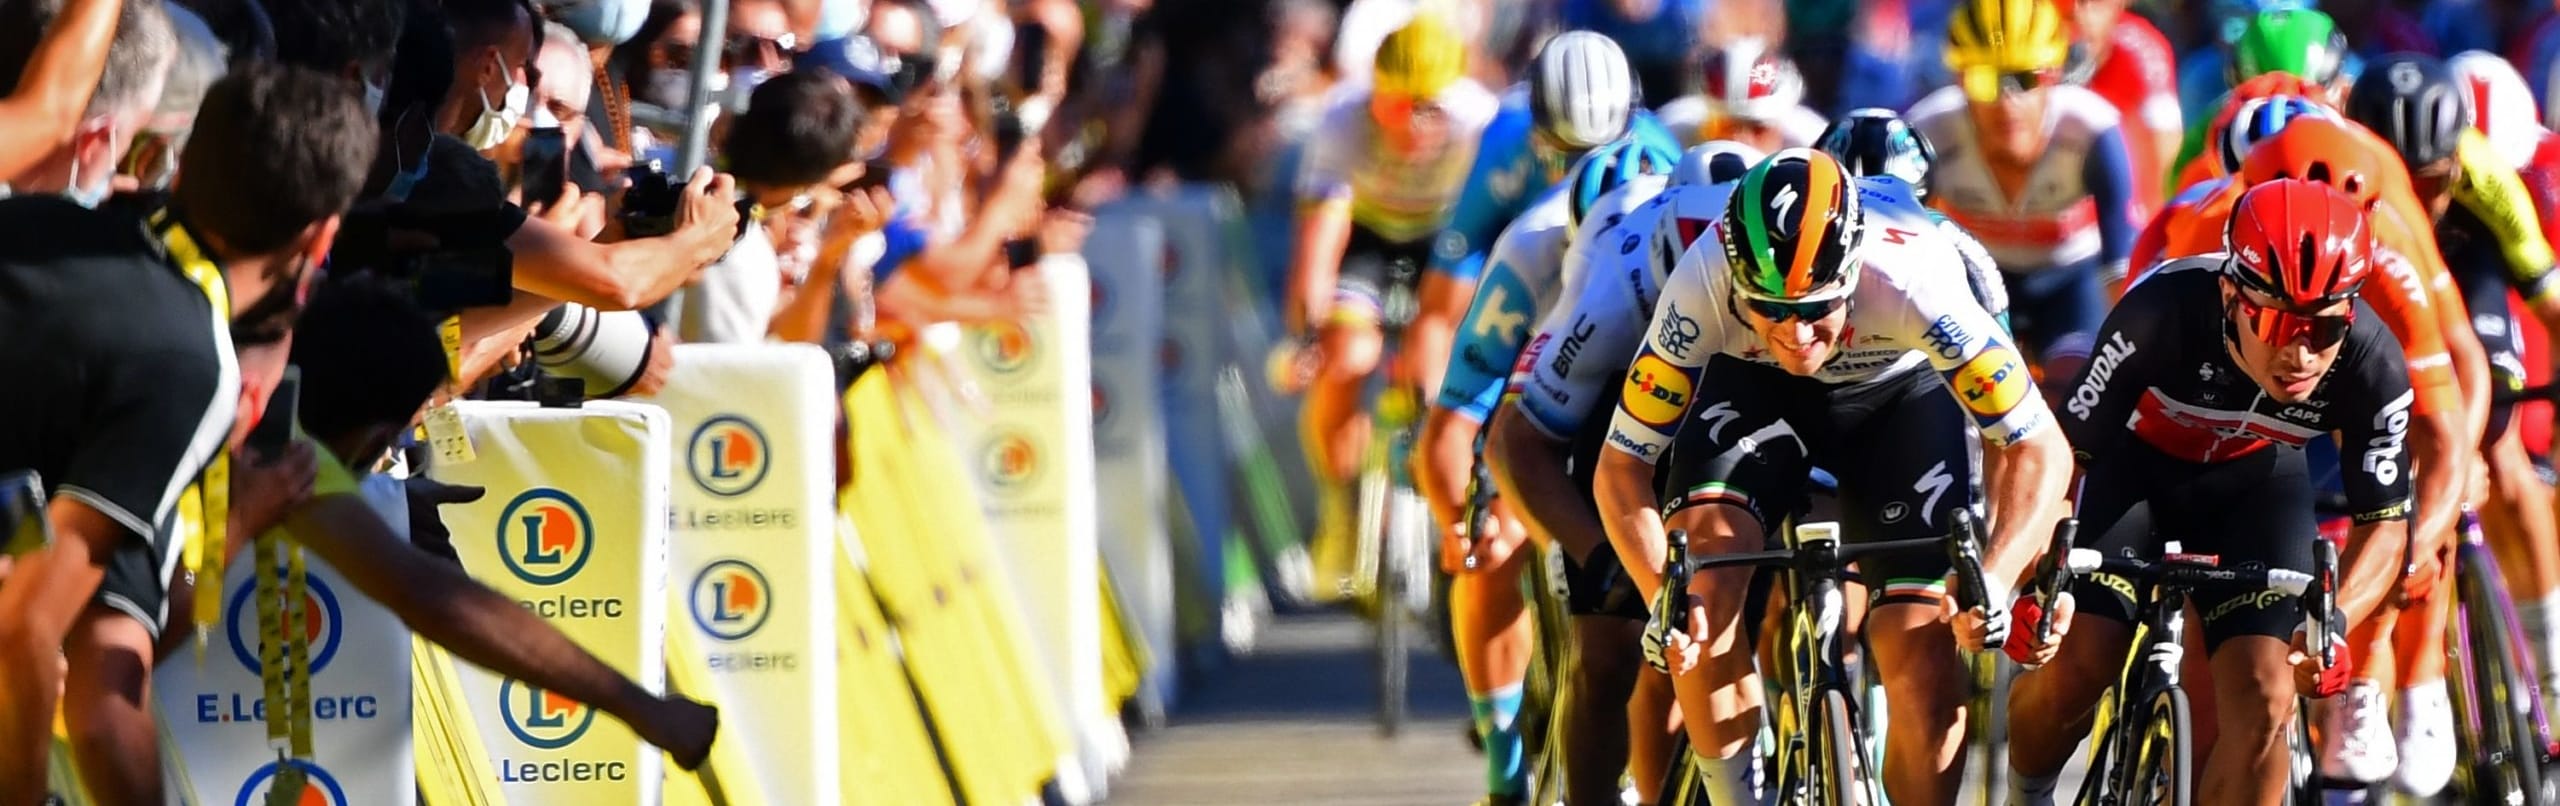 Tour de France 2020, quote e favoriti 7ª tappa: volatona prima dei Pirenei, è la volta buona per Bennett?